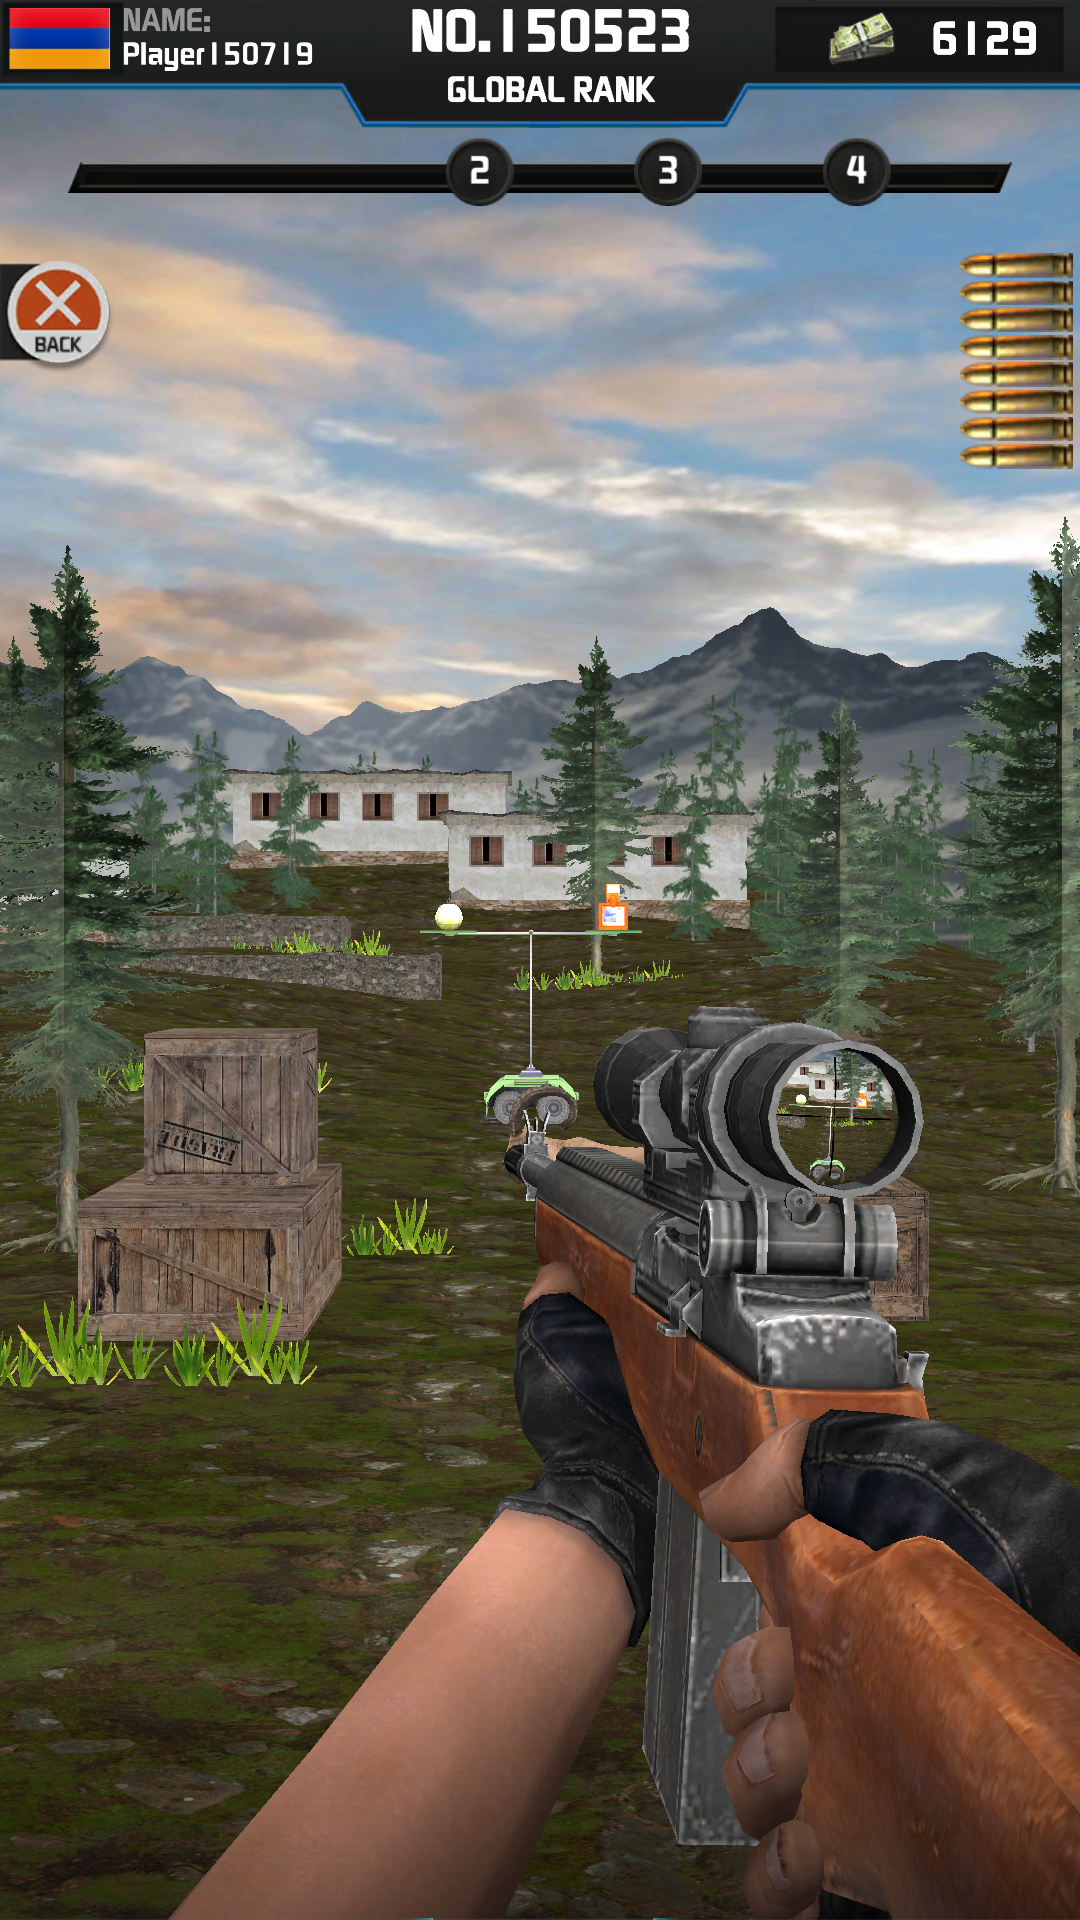 Screenshot 1 of Bậc thầy bắn cung: Trận đấu bắn mục tiêu 3D 1.0.6